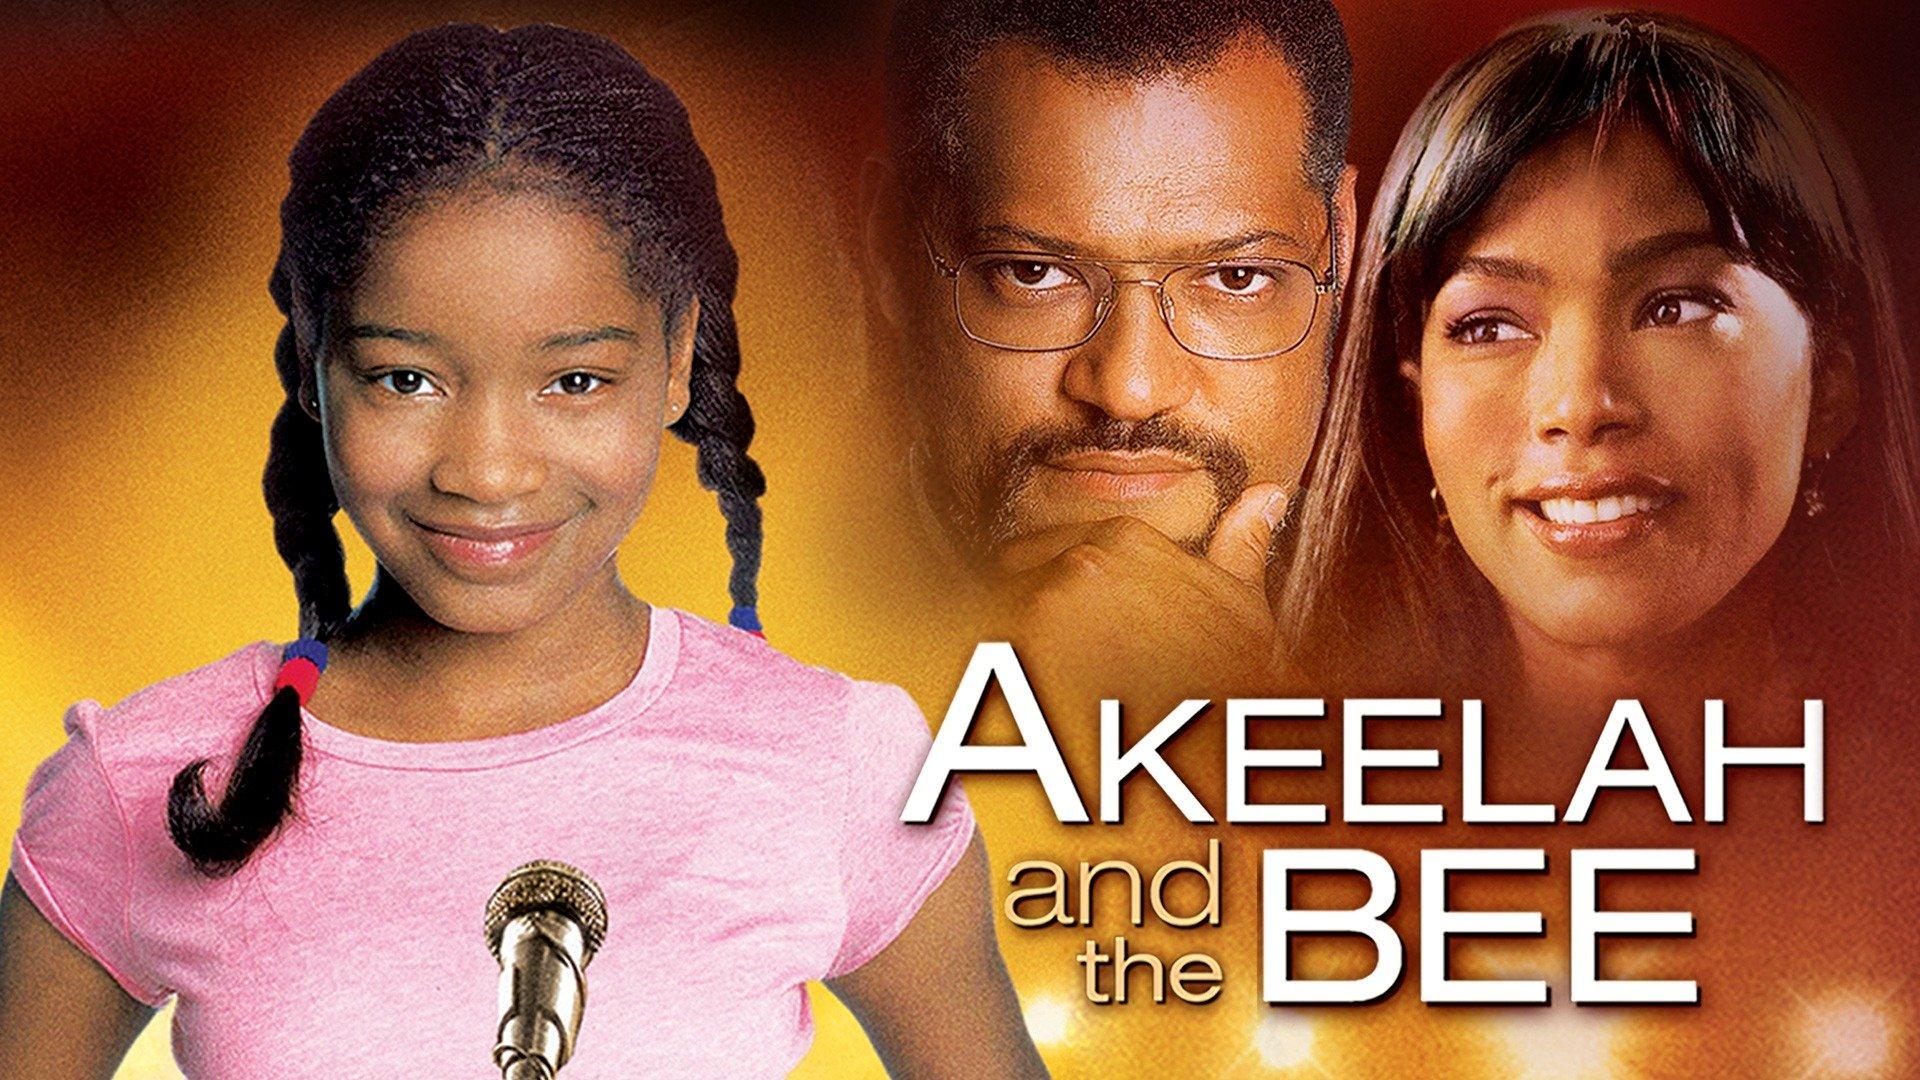 Akeelah and the Bee.